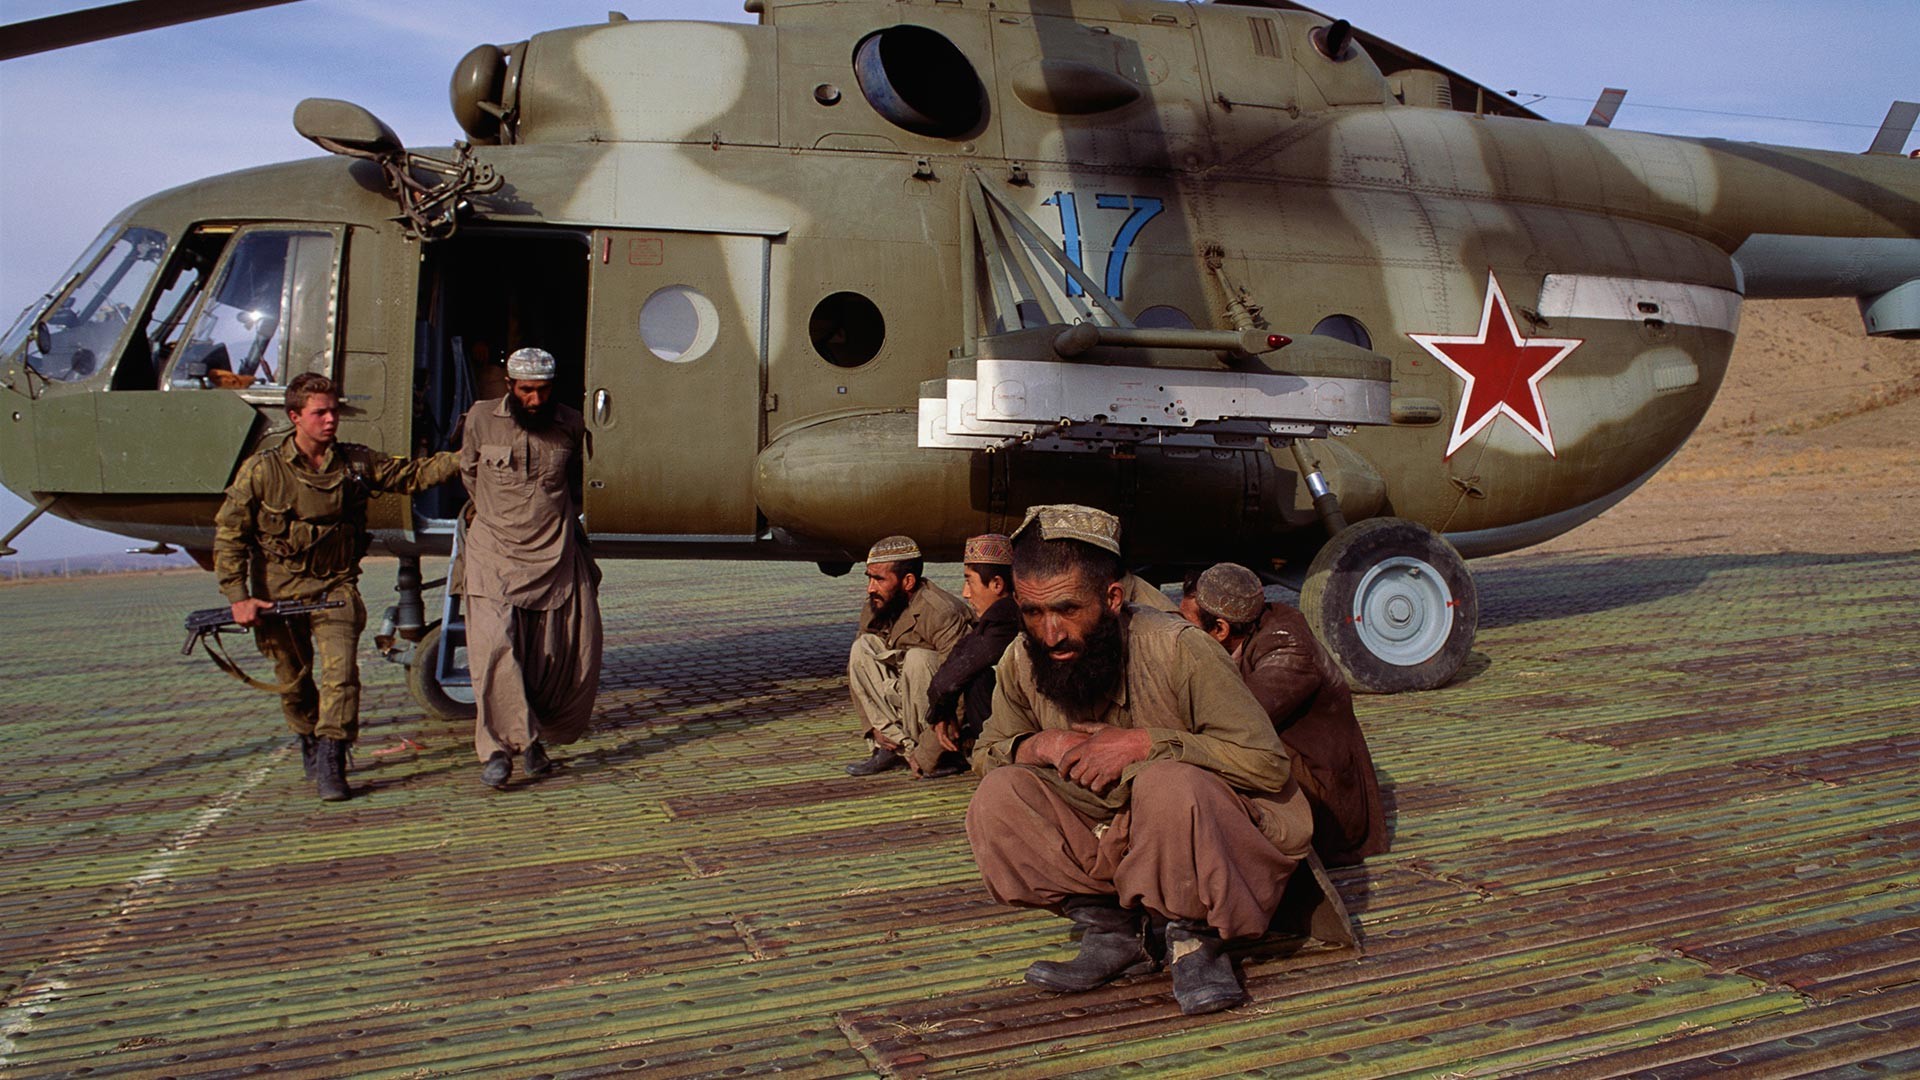 Soviet Guards Arrest Afghan Men.